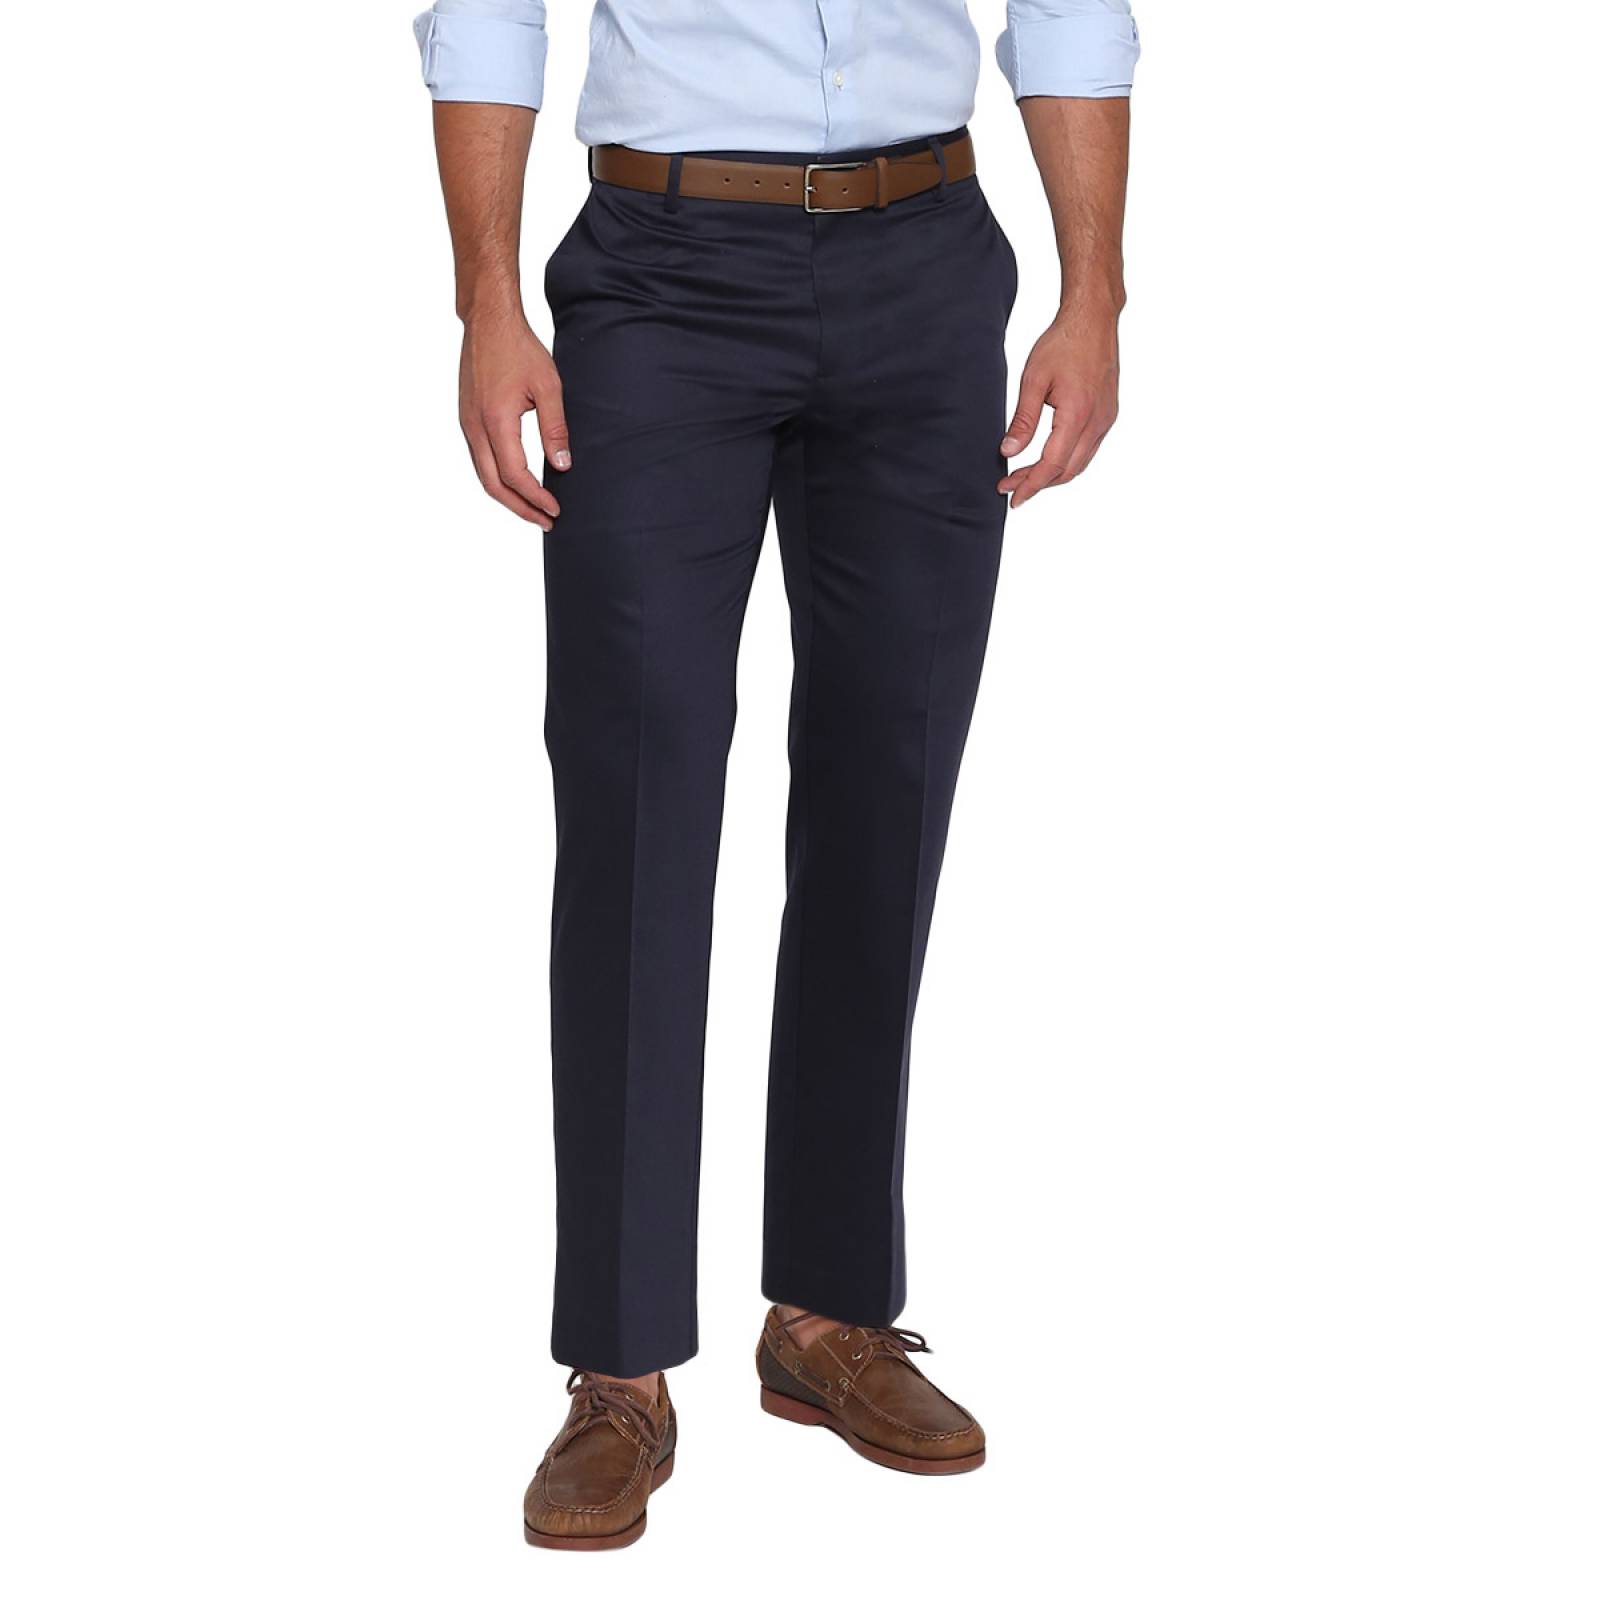 Pantalon Azul Marino by Dockers